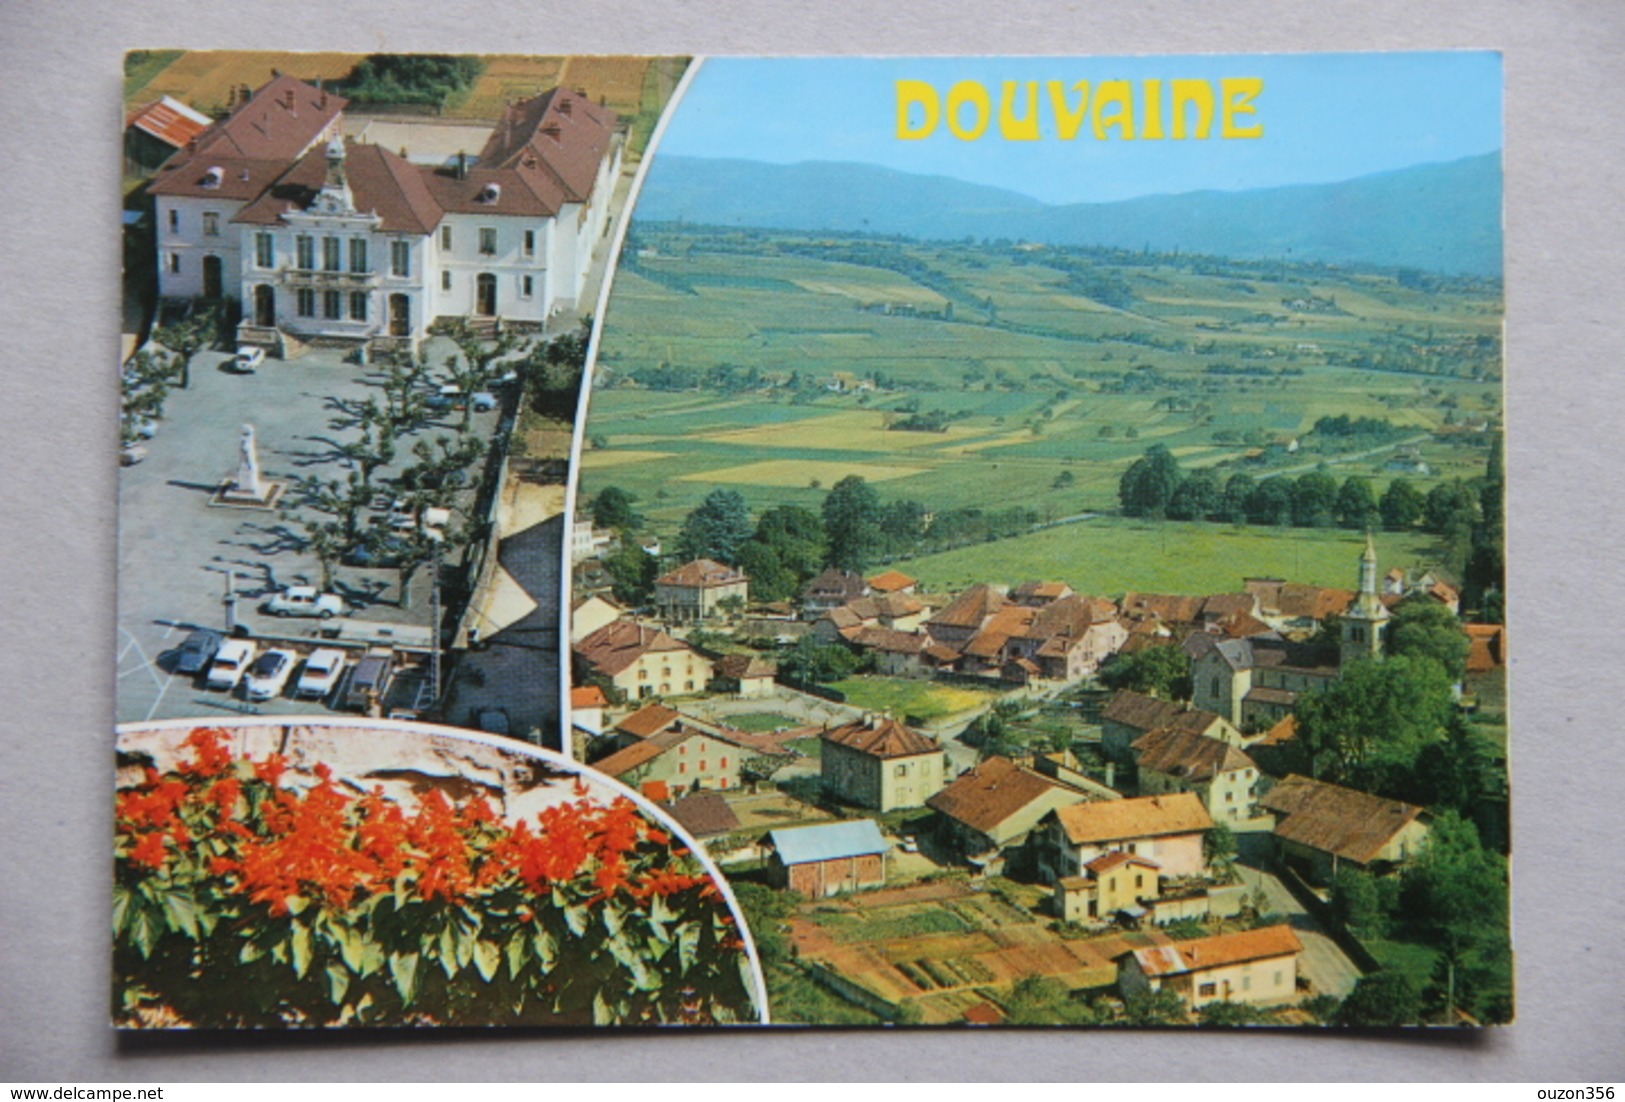 DOUVAINE (Haute-Savoie) - Douvaine